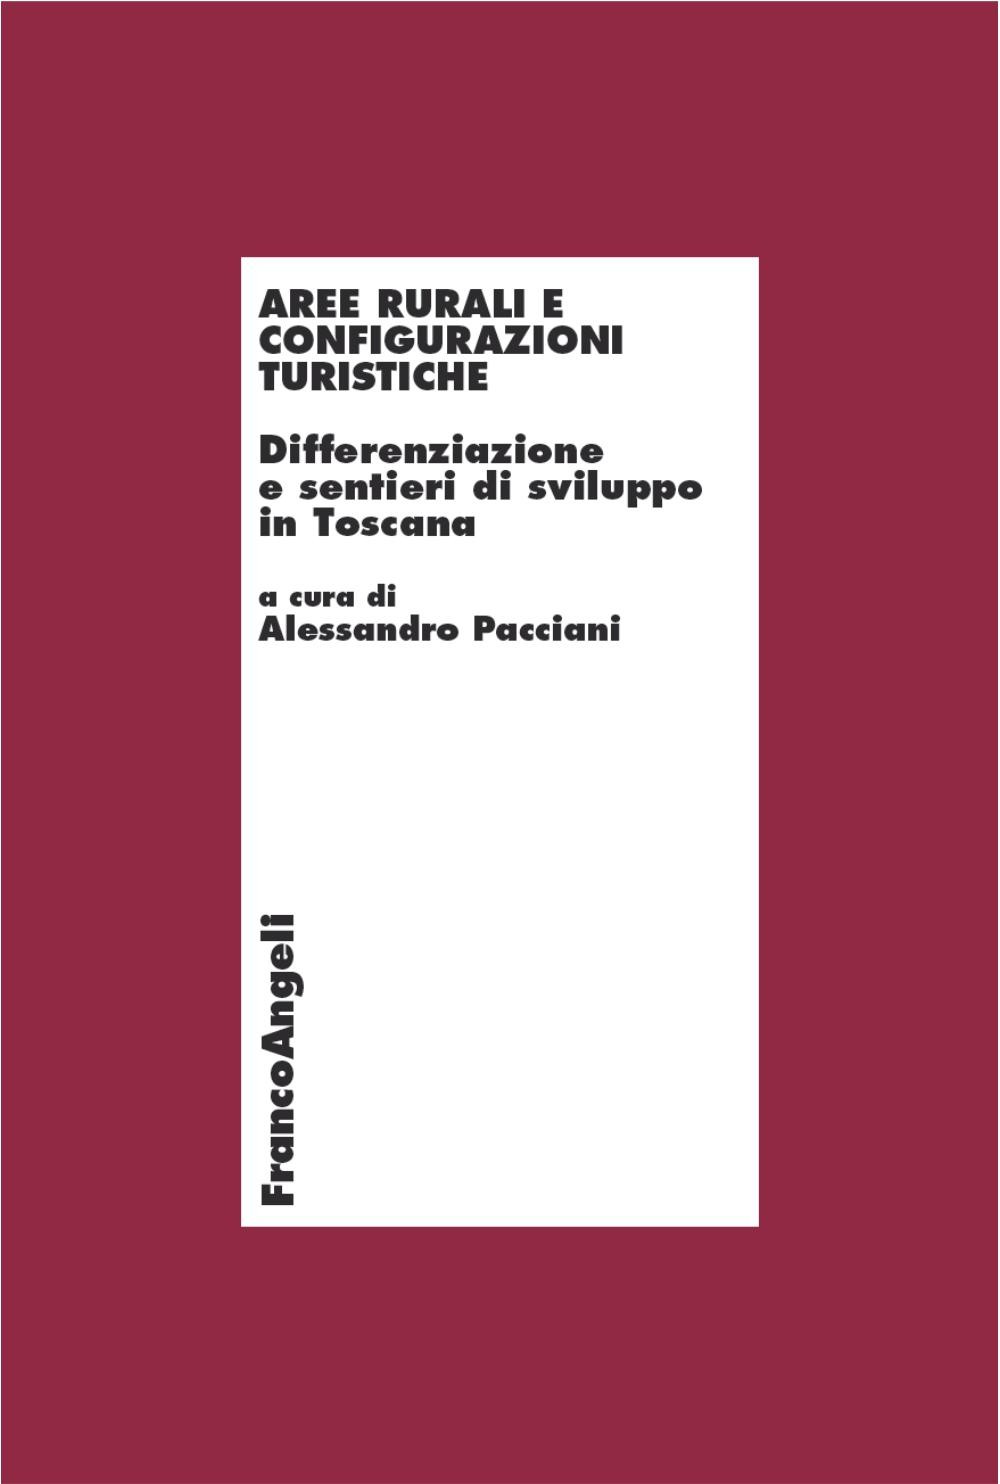 Aree rurali e configurazioni turistiche. Differenziazione e sentieri di sviluppo in Toscana - Librerie.coop